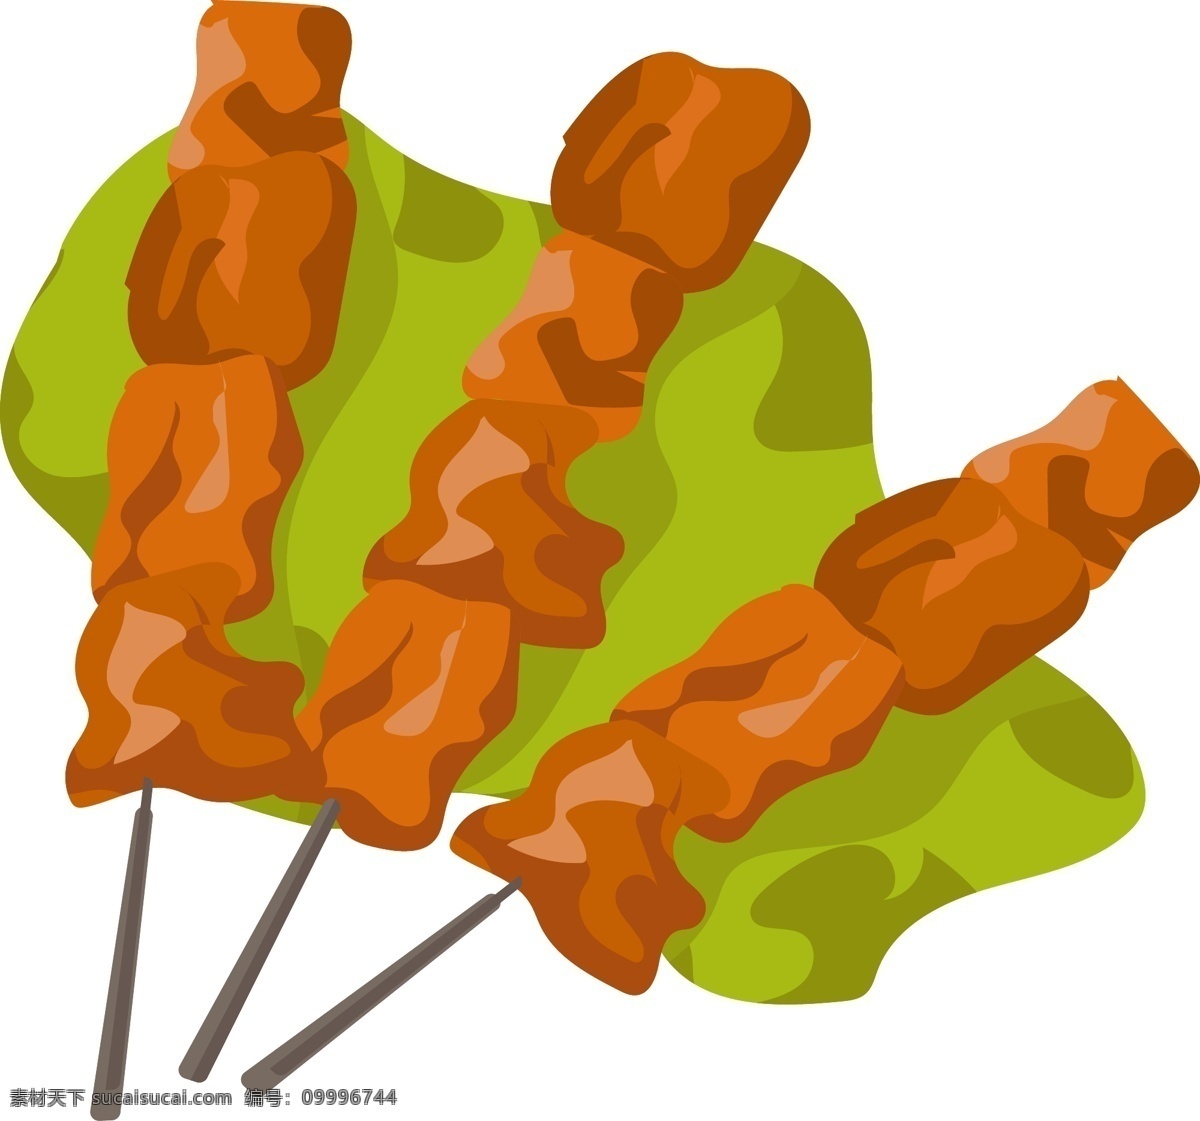 美味 烤肉 烧烤 插画 美味的烤肉 美味的烧烤 卡通插画 烧烤插画 烤肉插画 蔬菜烧烤 美食烧烤